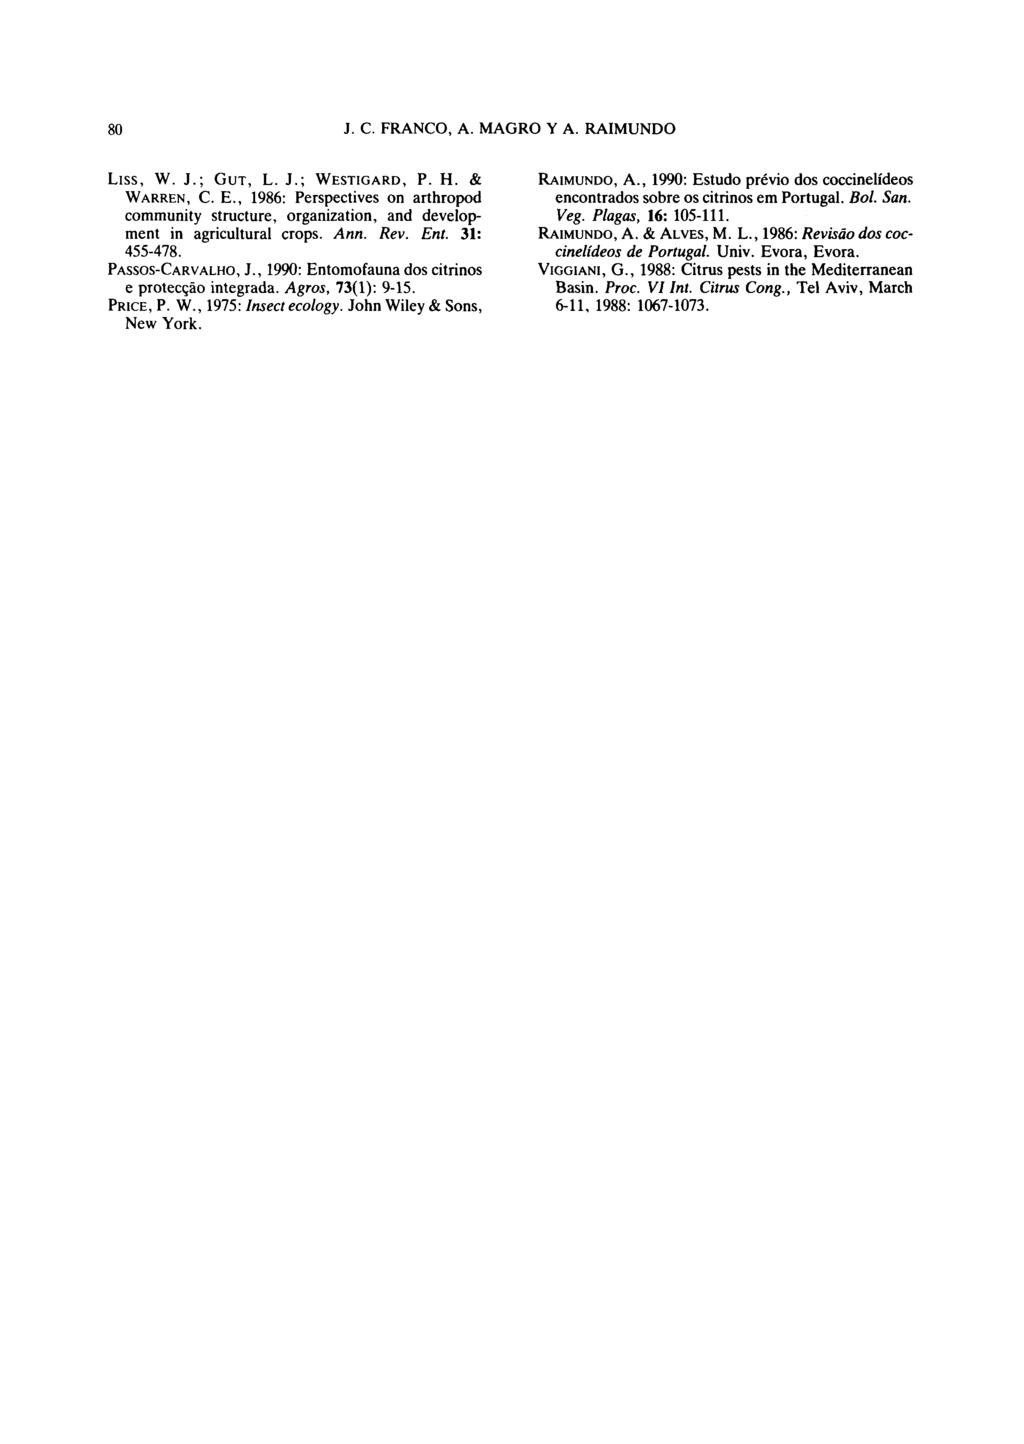 Liss, W. J.; GUT, L. J.; WESTIGARD, P. H. & RAIMUNDO, A., 1990: Estudo previo dos coccinelídeos WARREN, CE., 1986: Perspectives on arthropod encontrados sobre os citrinos em Portugal. Bol. San.